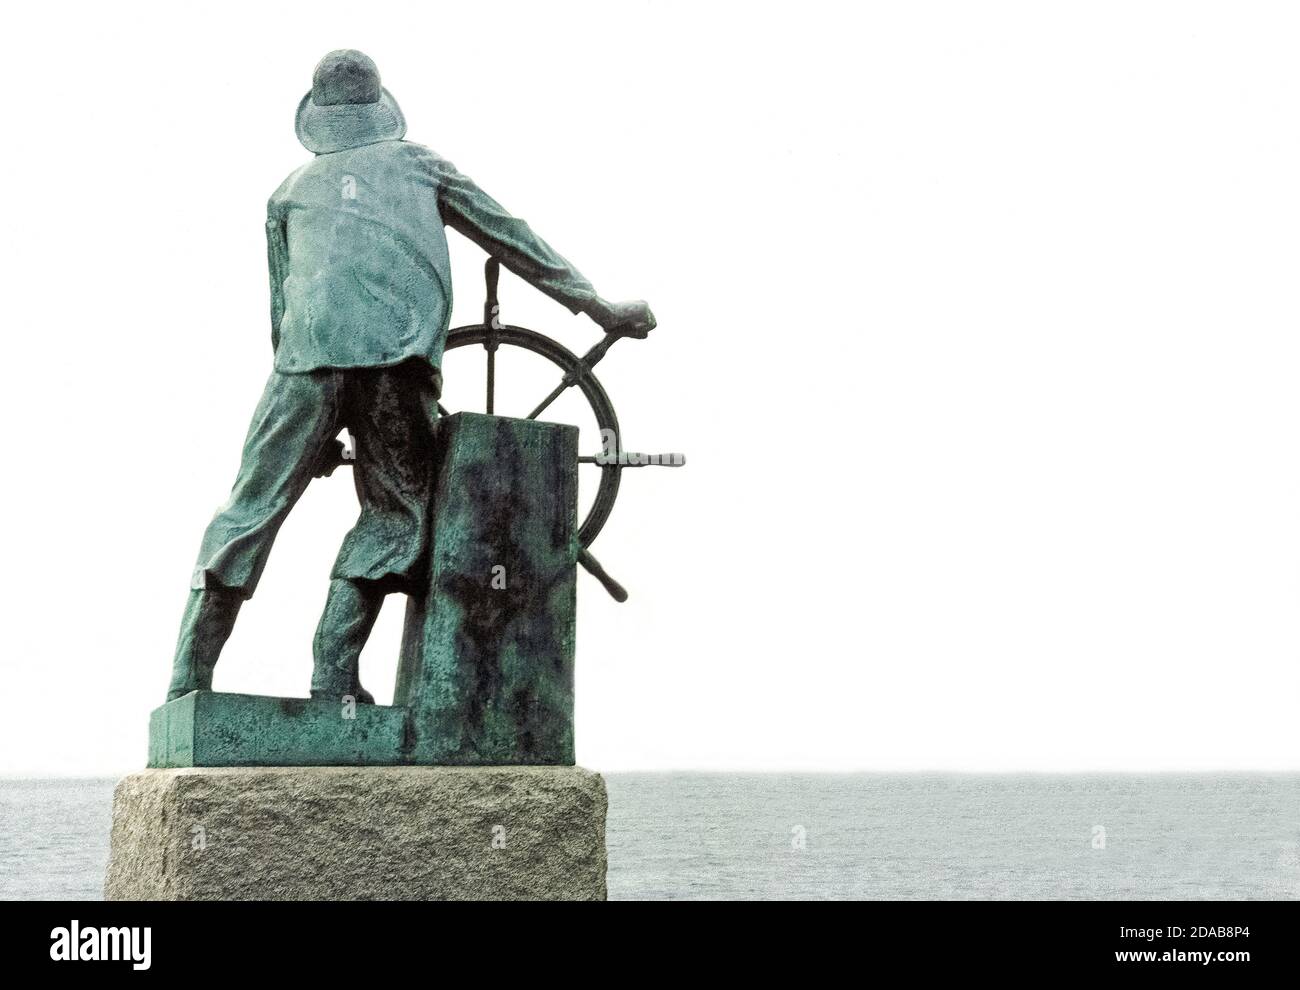 Esta estatua de bronce de un pescador al volante de un barco mira hacia el puerto en Gloucester, Massachusetts, EE.UU., como un monumento a los miles de pescadores perdidos en el mar durante los primeros tres siglos (1623-1923) de la historia de esa ciudad de Nueva Inglaterra. Tomado de un salmo bíblico está la inscripción bien conocida del monumento: "Los que bajan al mar en barcos". Está cincelada en un gran bloque de granito que alberga la estatua de 2.4 metros (8 pies) de altura del escultor inglés Leonard Craske. Este famoso monumento está en el Registro Nacional de lugares históricos de los Estados Unidos. Foto de stock